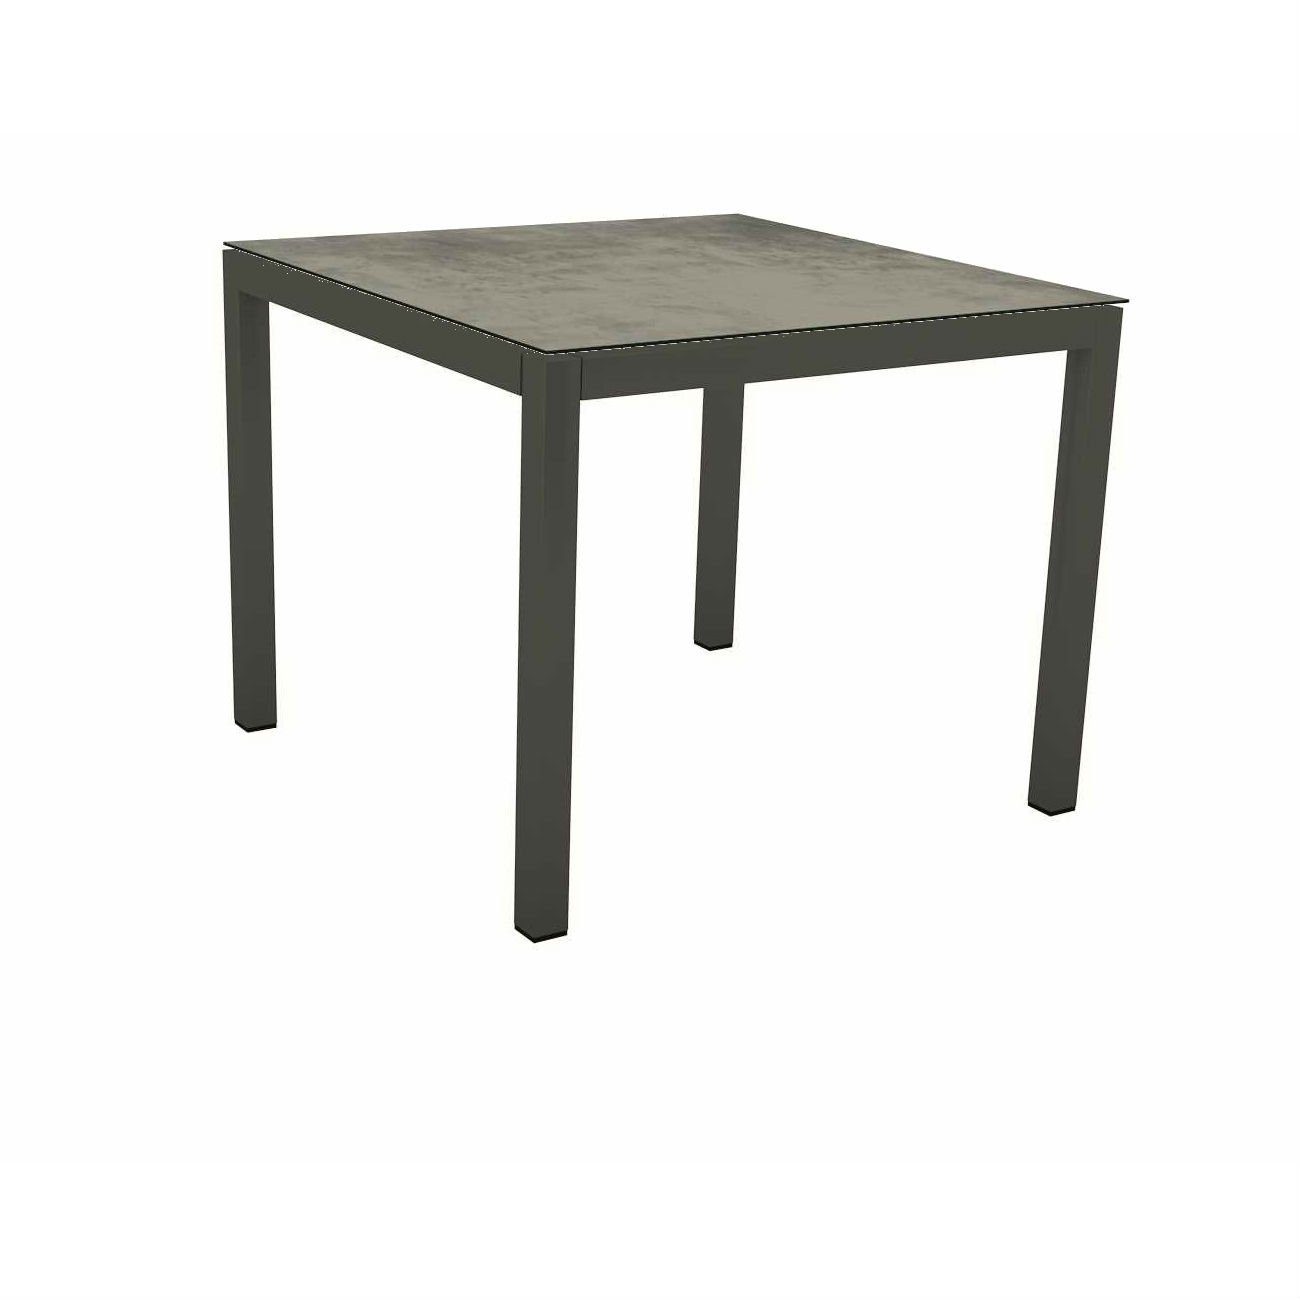 Stern Tischsystem Gartentisch, Gestell Aluminium anthrazit, Tischplatte HPL Zement, Maße: 90x90 cm